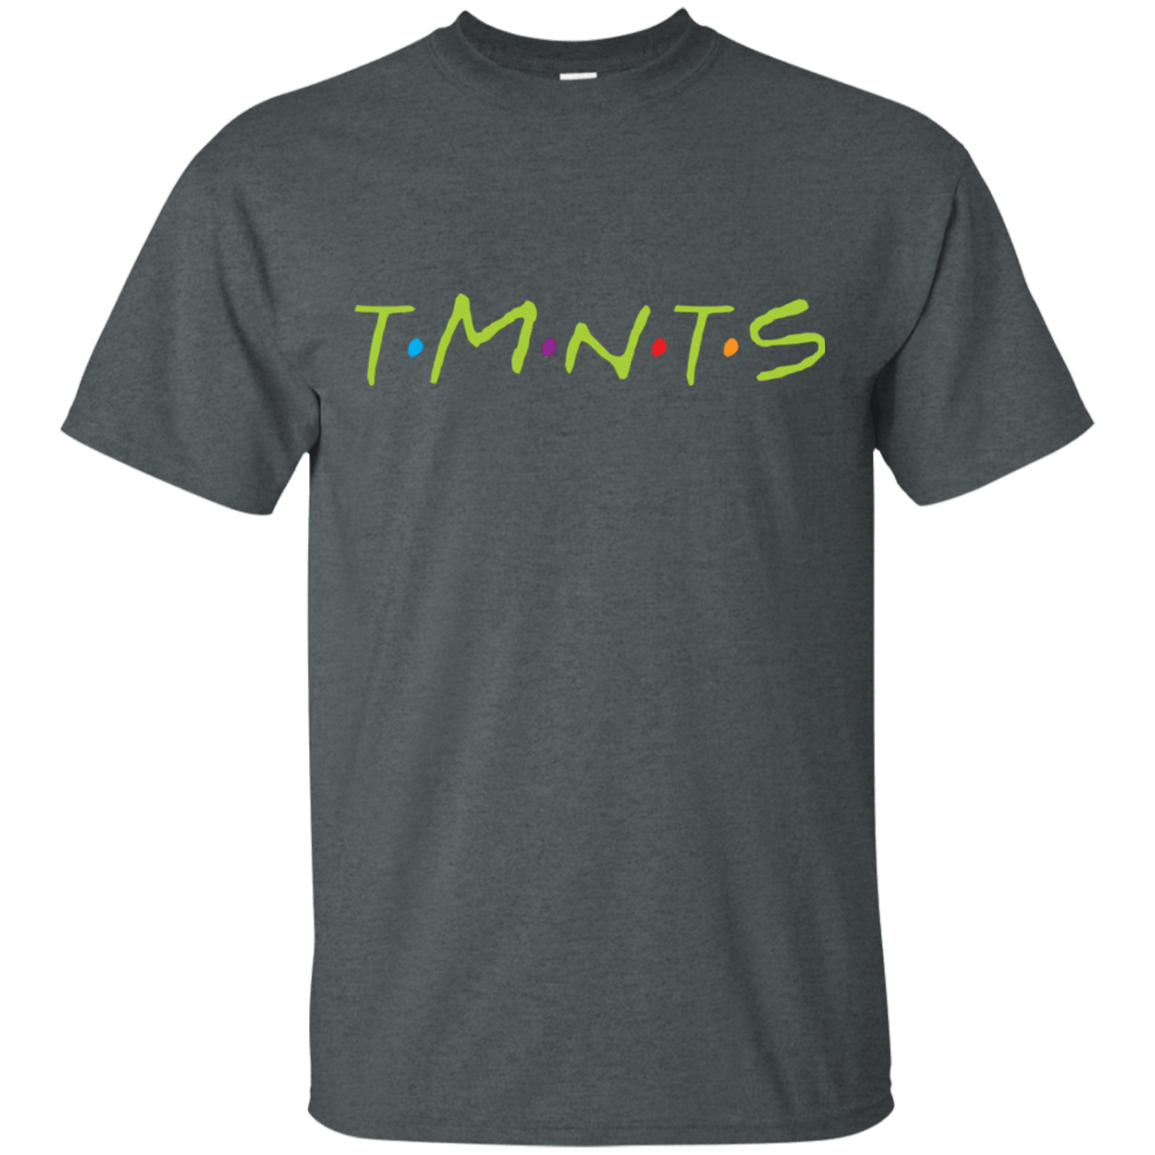 T-Shirts Dark Heather / S TMNTS T-Shirt